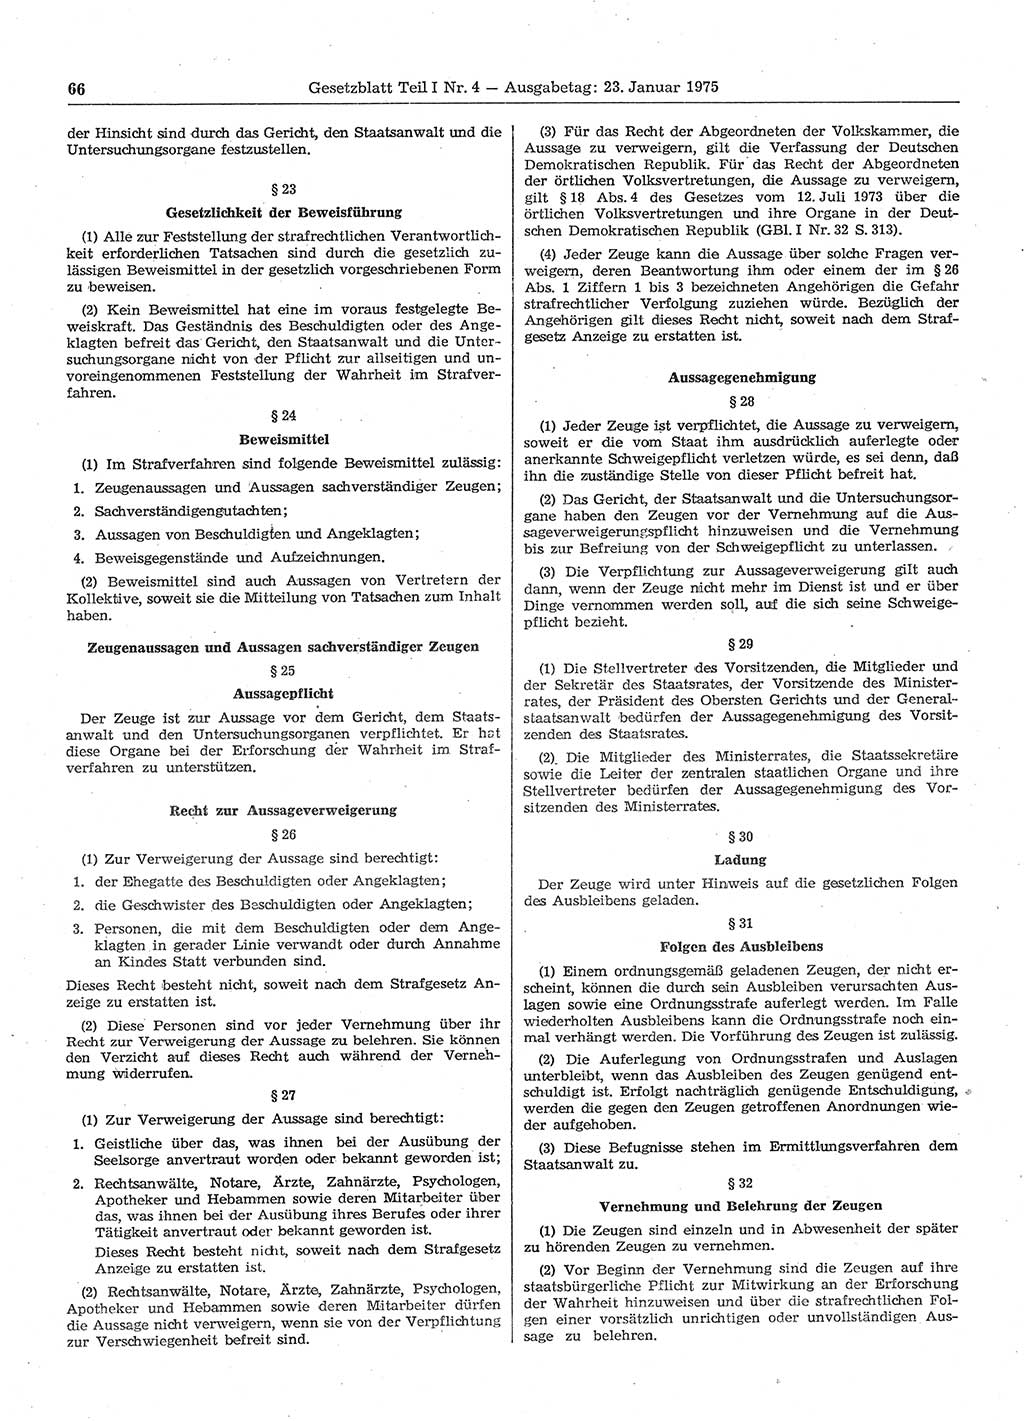 Gesetzblatt (GBl.) der Deutschen Demokratischen Republik (DDR) Teil Ⅰ 1975, Seite 66 (GBl. DDR Ⅰ 1975, S. 66)